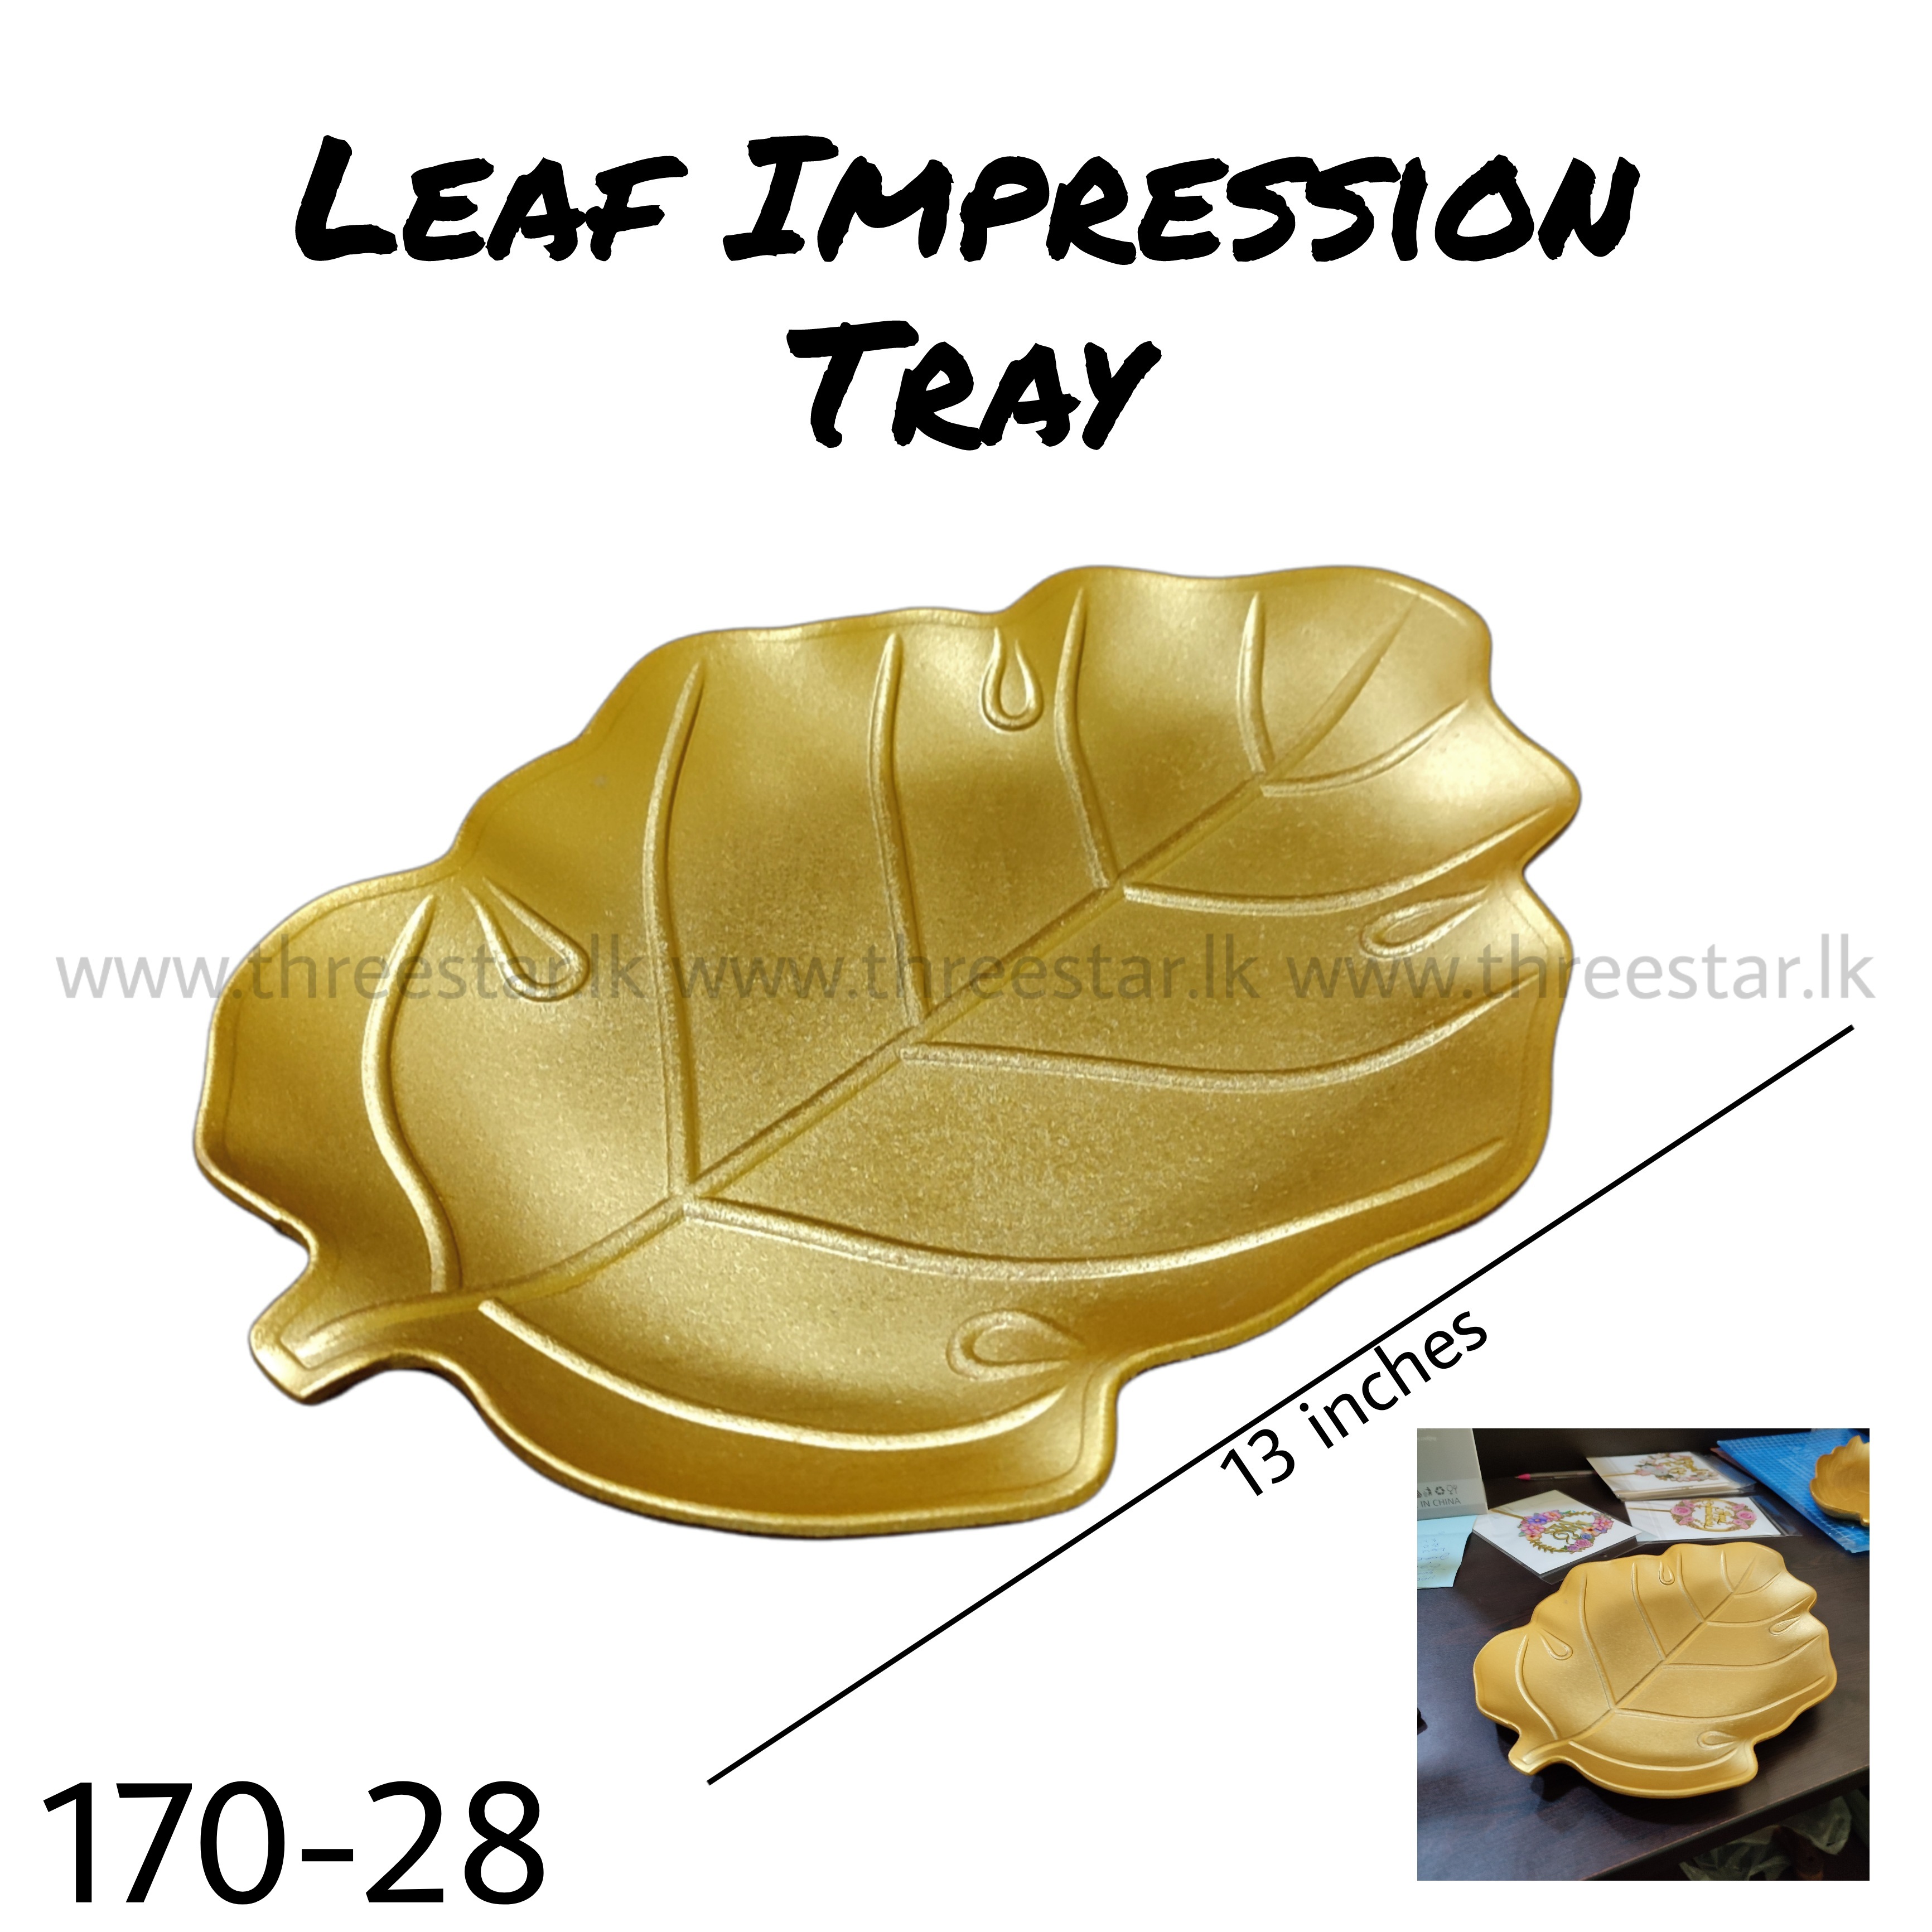 Leaf Impression Tray